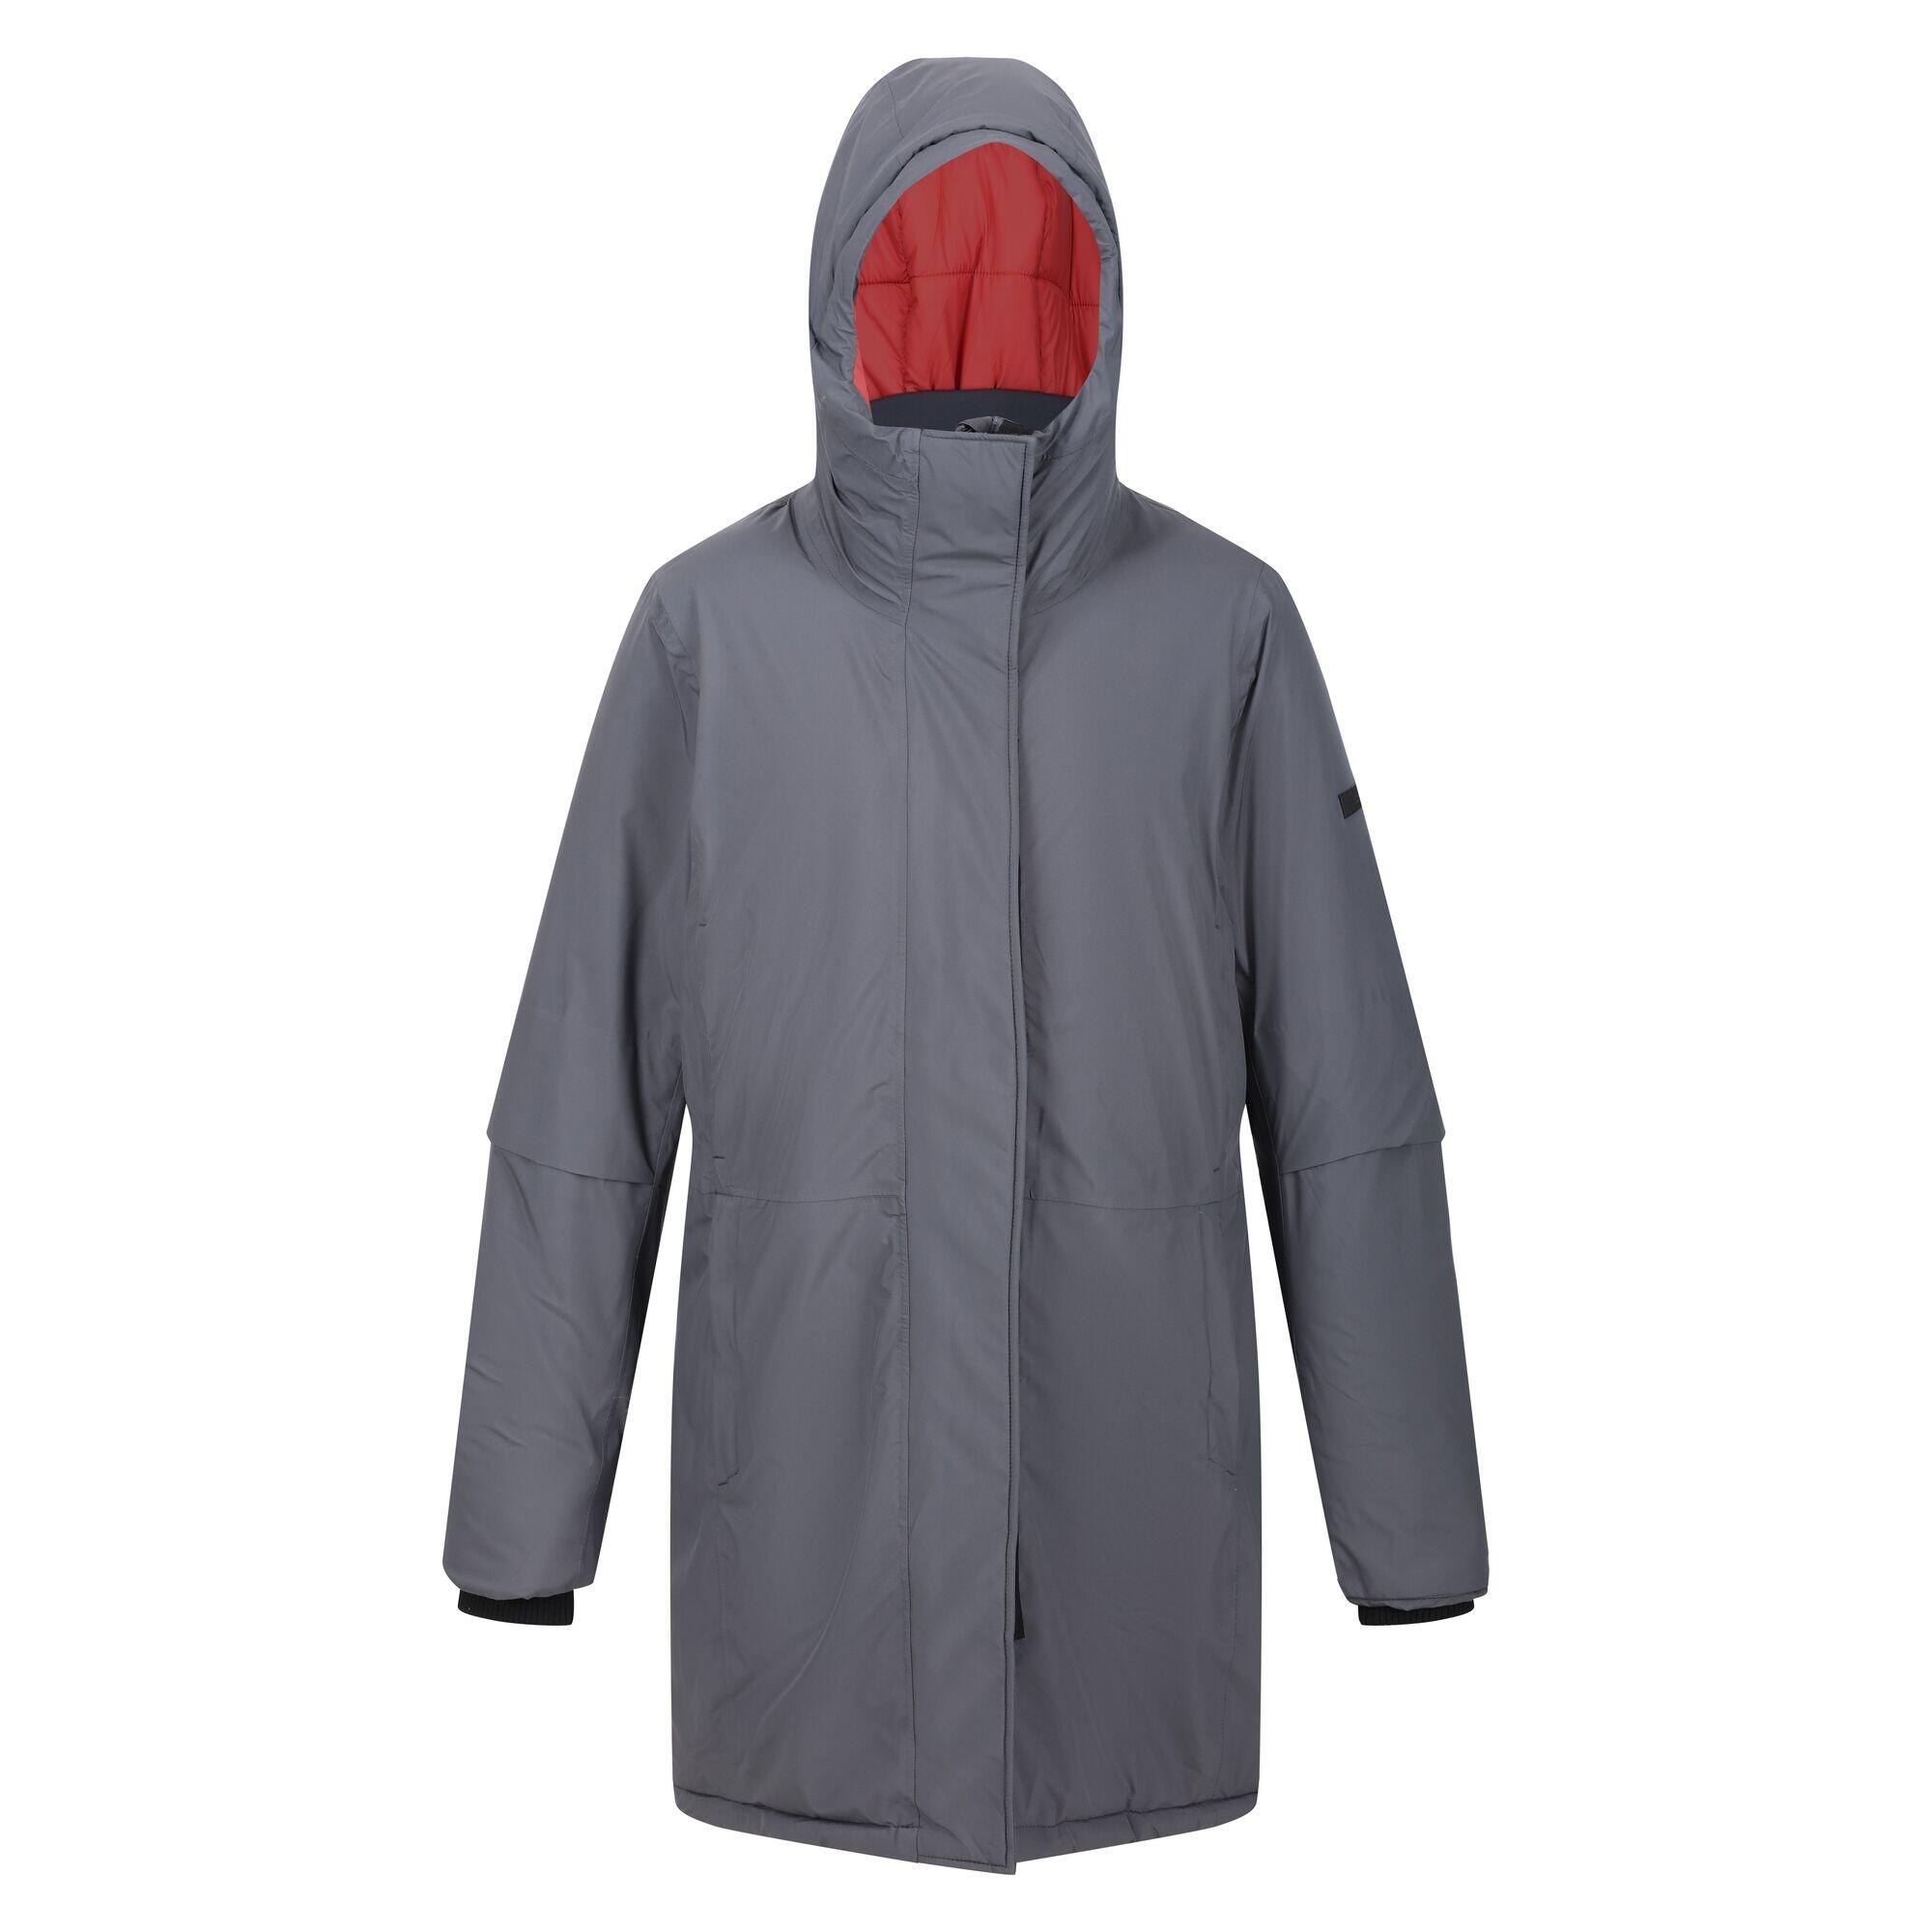 Womens/Ladies Yewbank III Waterproof Jacket (Seal Grey/Mineral Red) 1/5